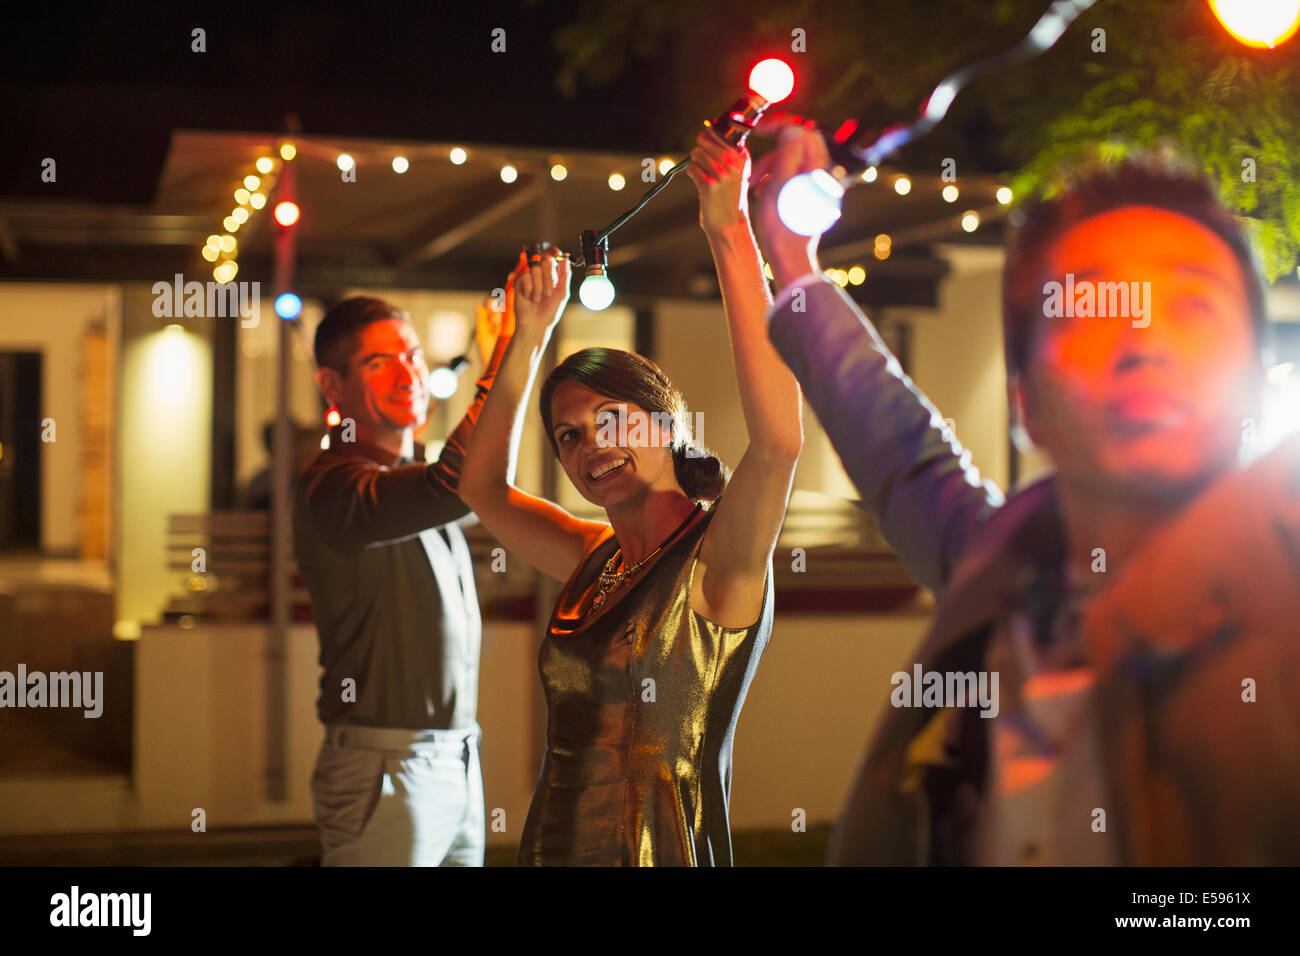 Amigos ensartar luces en la fiesta al aire libre Foto de stock